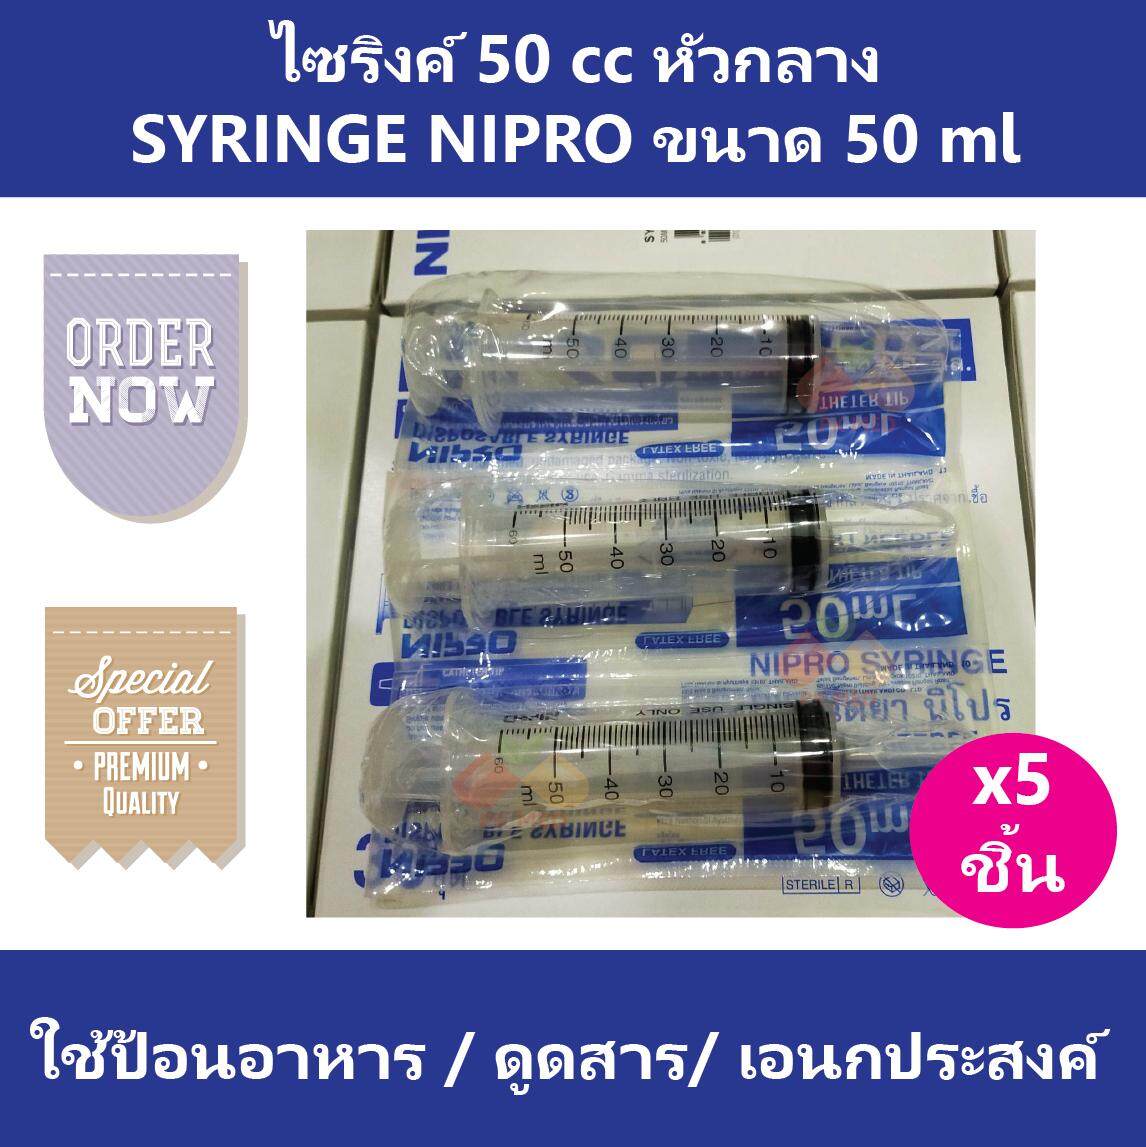 (5 ชิ้น) ไซริงค์ 50 cc หัวกลาง SYRINGE NIPRO ไซริง กระบอกฉีดยา ไซริงค์พลาสติก นิปโปร ขนาด 50 ml (ไม่มีเข็ม)